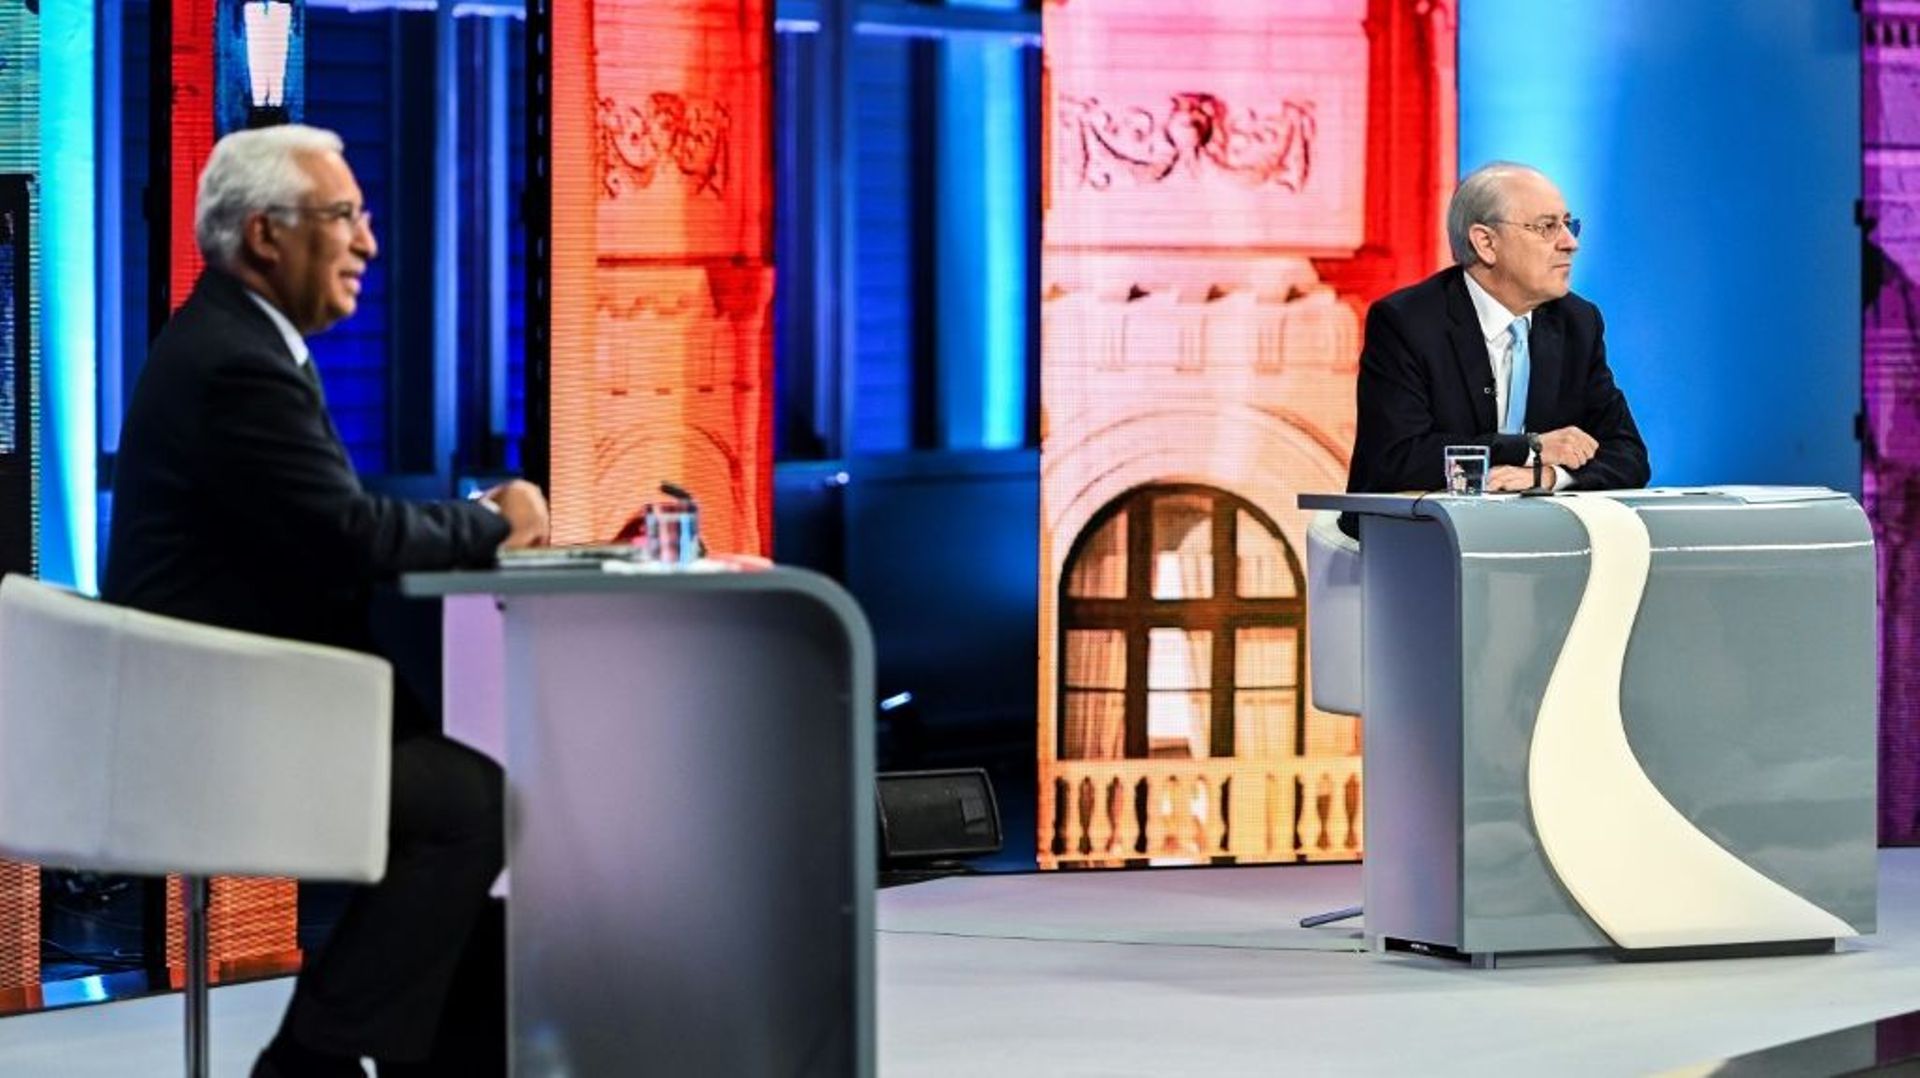 Le Premier ministre socialiste portugais sortant Antonio Costa (G) avec son adversaire de centre droit Rui Rio avant un débat télévisé dans les studios de la télévision publique RTP à Lisbonne, le 13 janvier 2022